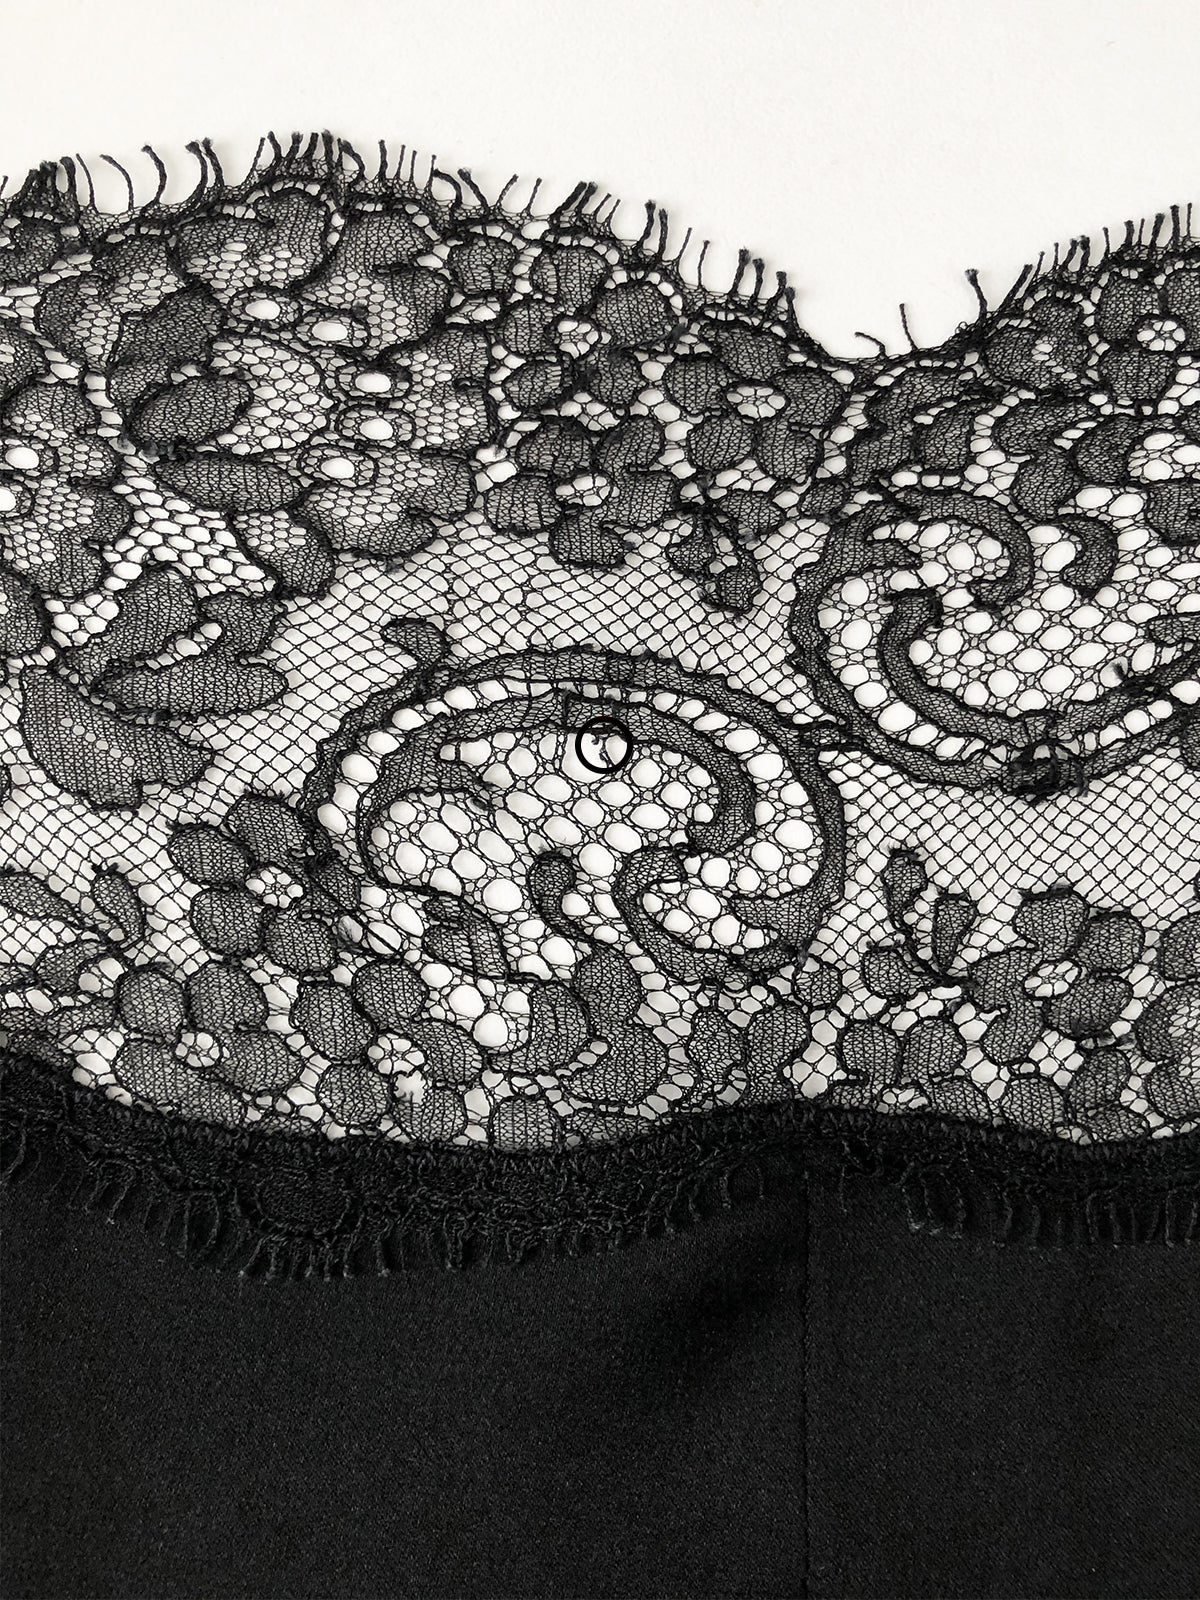 YVES SAINT LAURENT c. 1978/79 Haute Couture 2 Pc. Chantilly Lace Silk Dress Size M